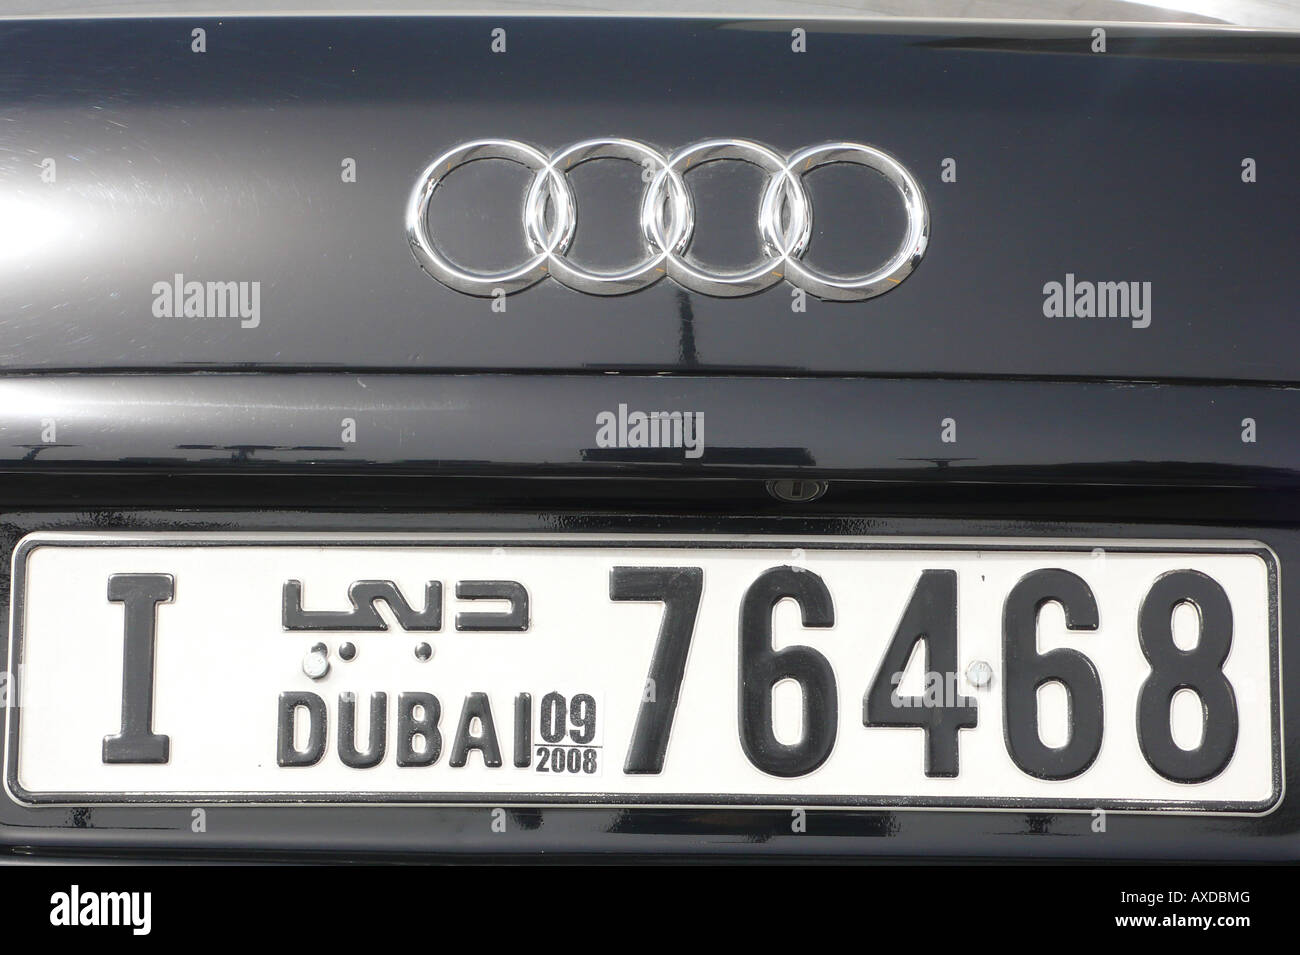 Ein Dubaier Kennzeichen auf einem schwarzen Audi gesehen in Abu Dhabi, VAE. Dubai ist in Arabisch und Englisch geschrieben. Stockfoto